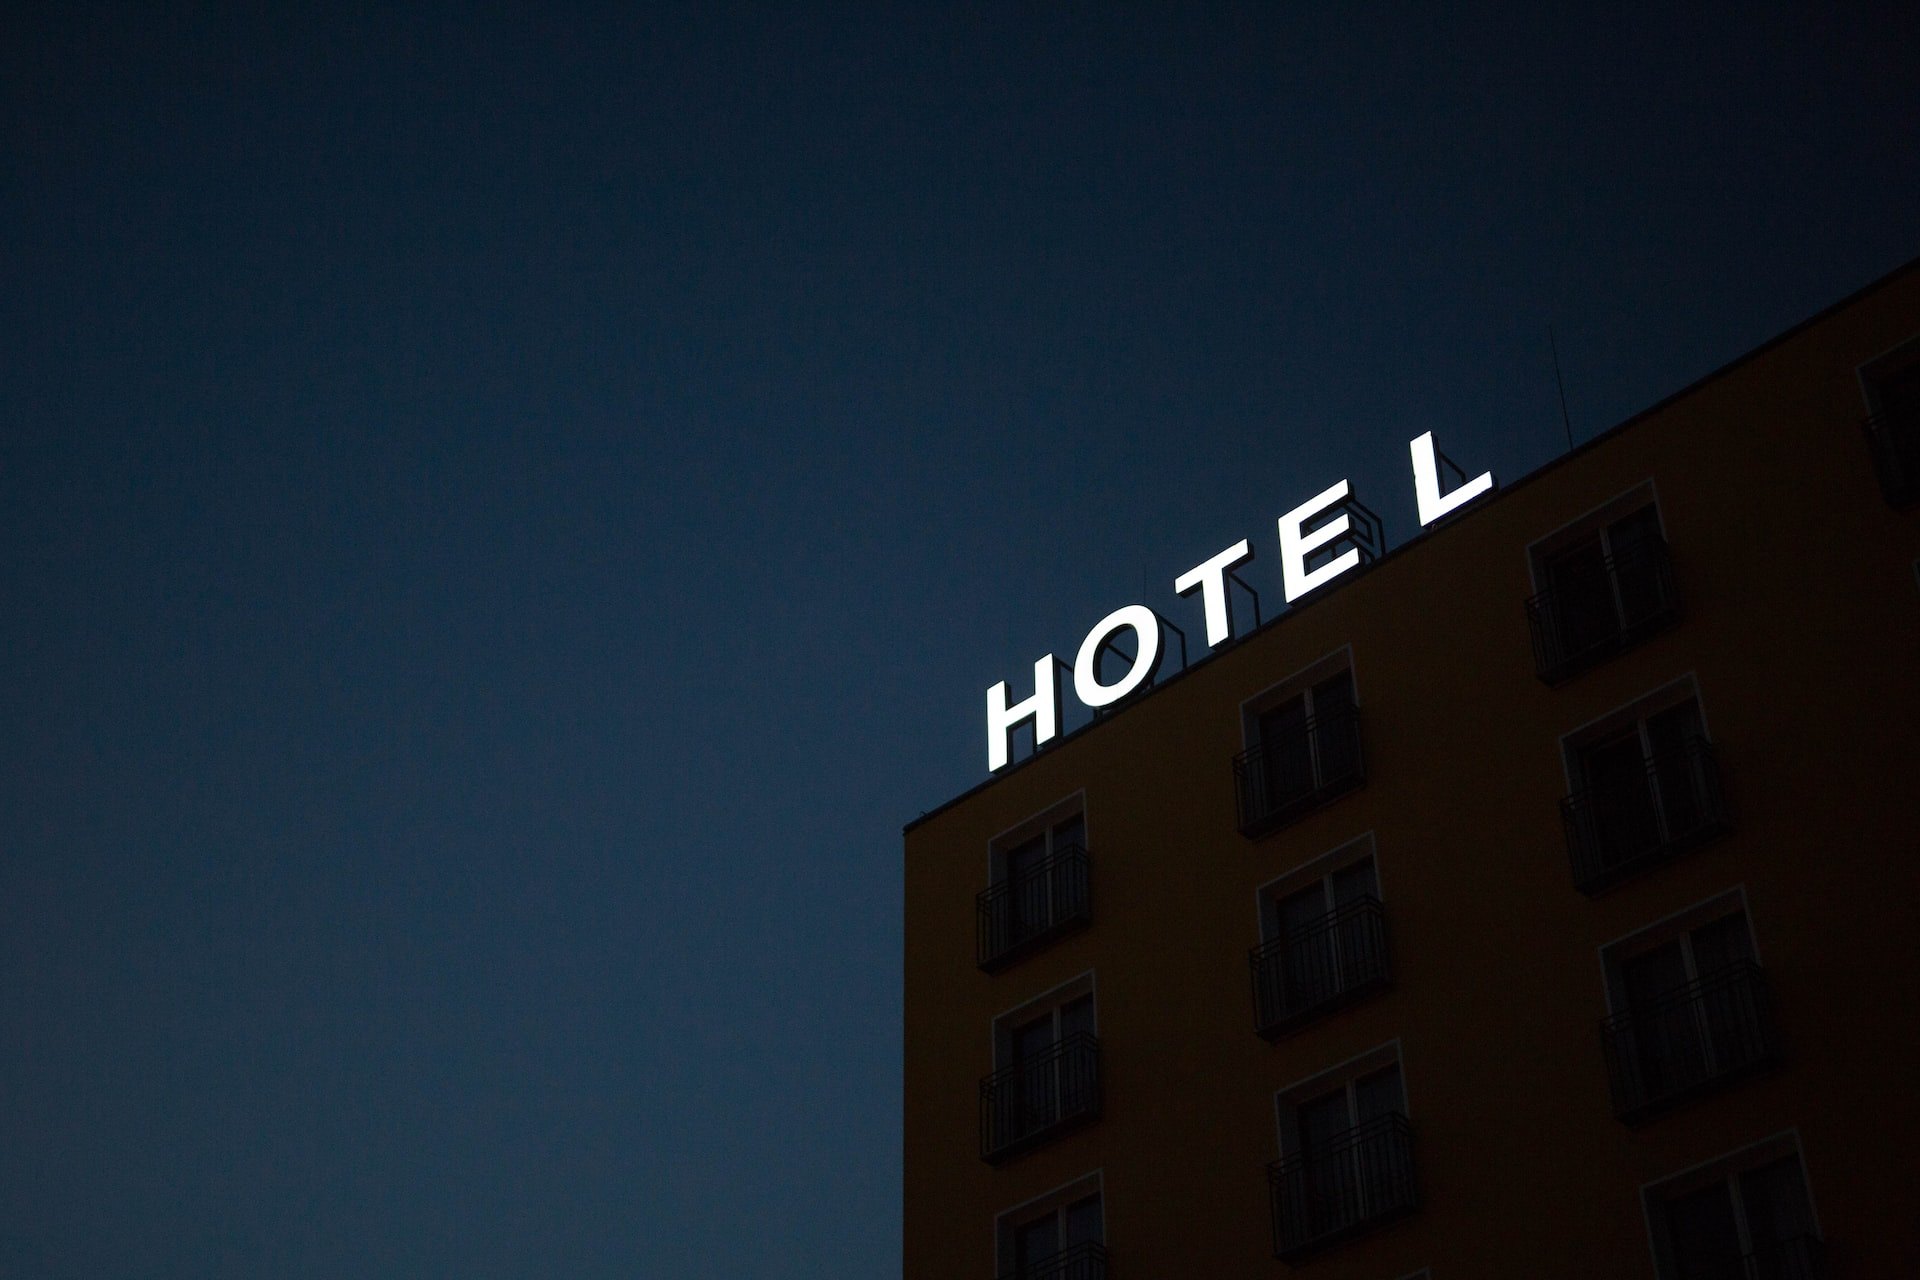 Booking – este é o segredo para obter descontos de hotéis